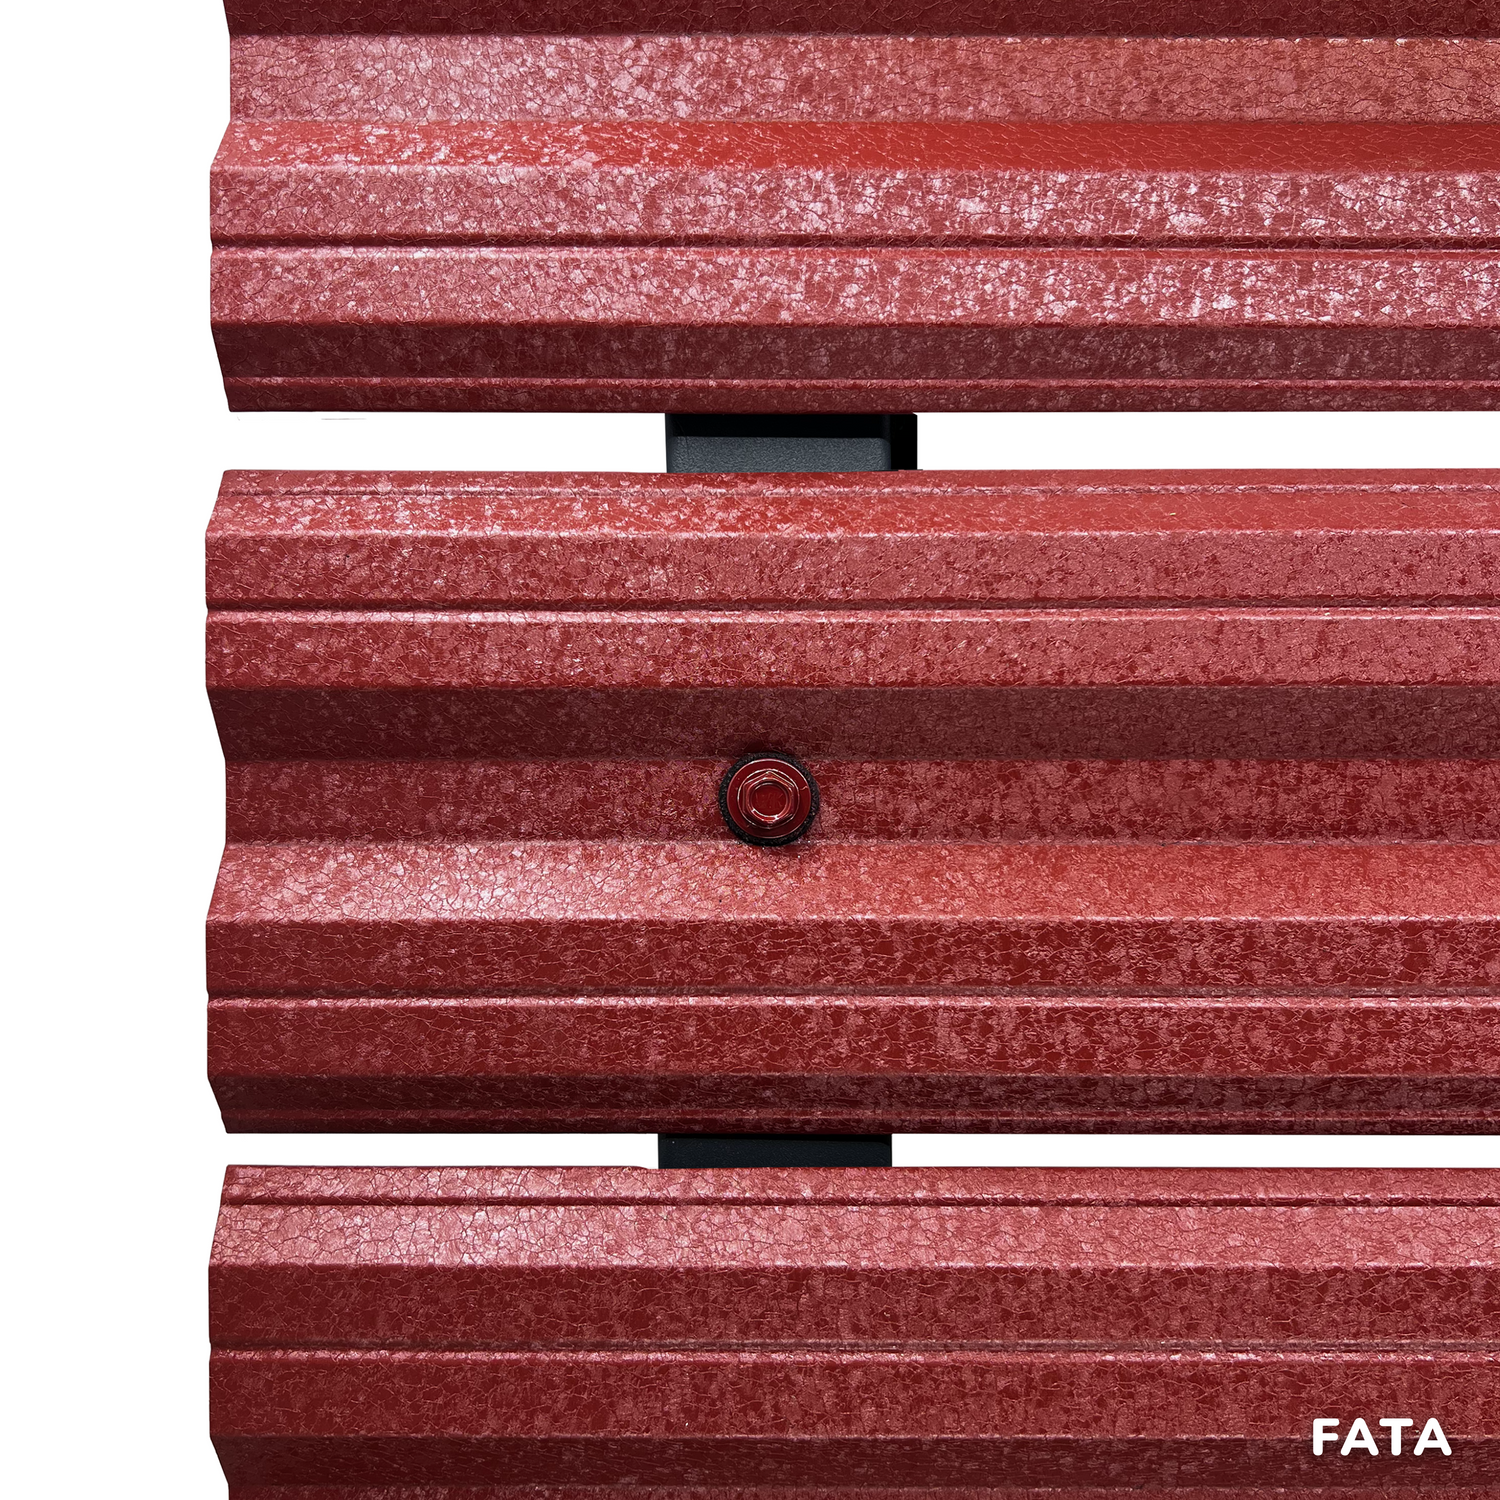 Prim-plan al modelului SIMETRICA Sipca Metalica cu finisaj de Hi-Mat în culoare Cărămidă Roșie RAL 3009, disponibil pe www.sipca.ro, fabricat de Top Profil Sistem.